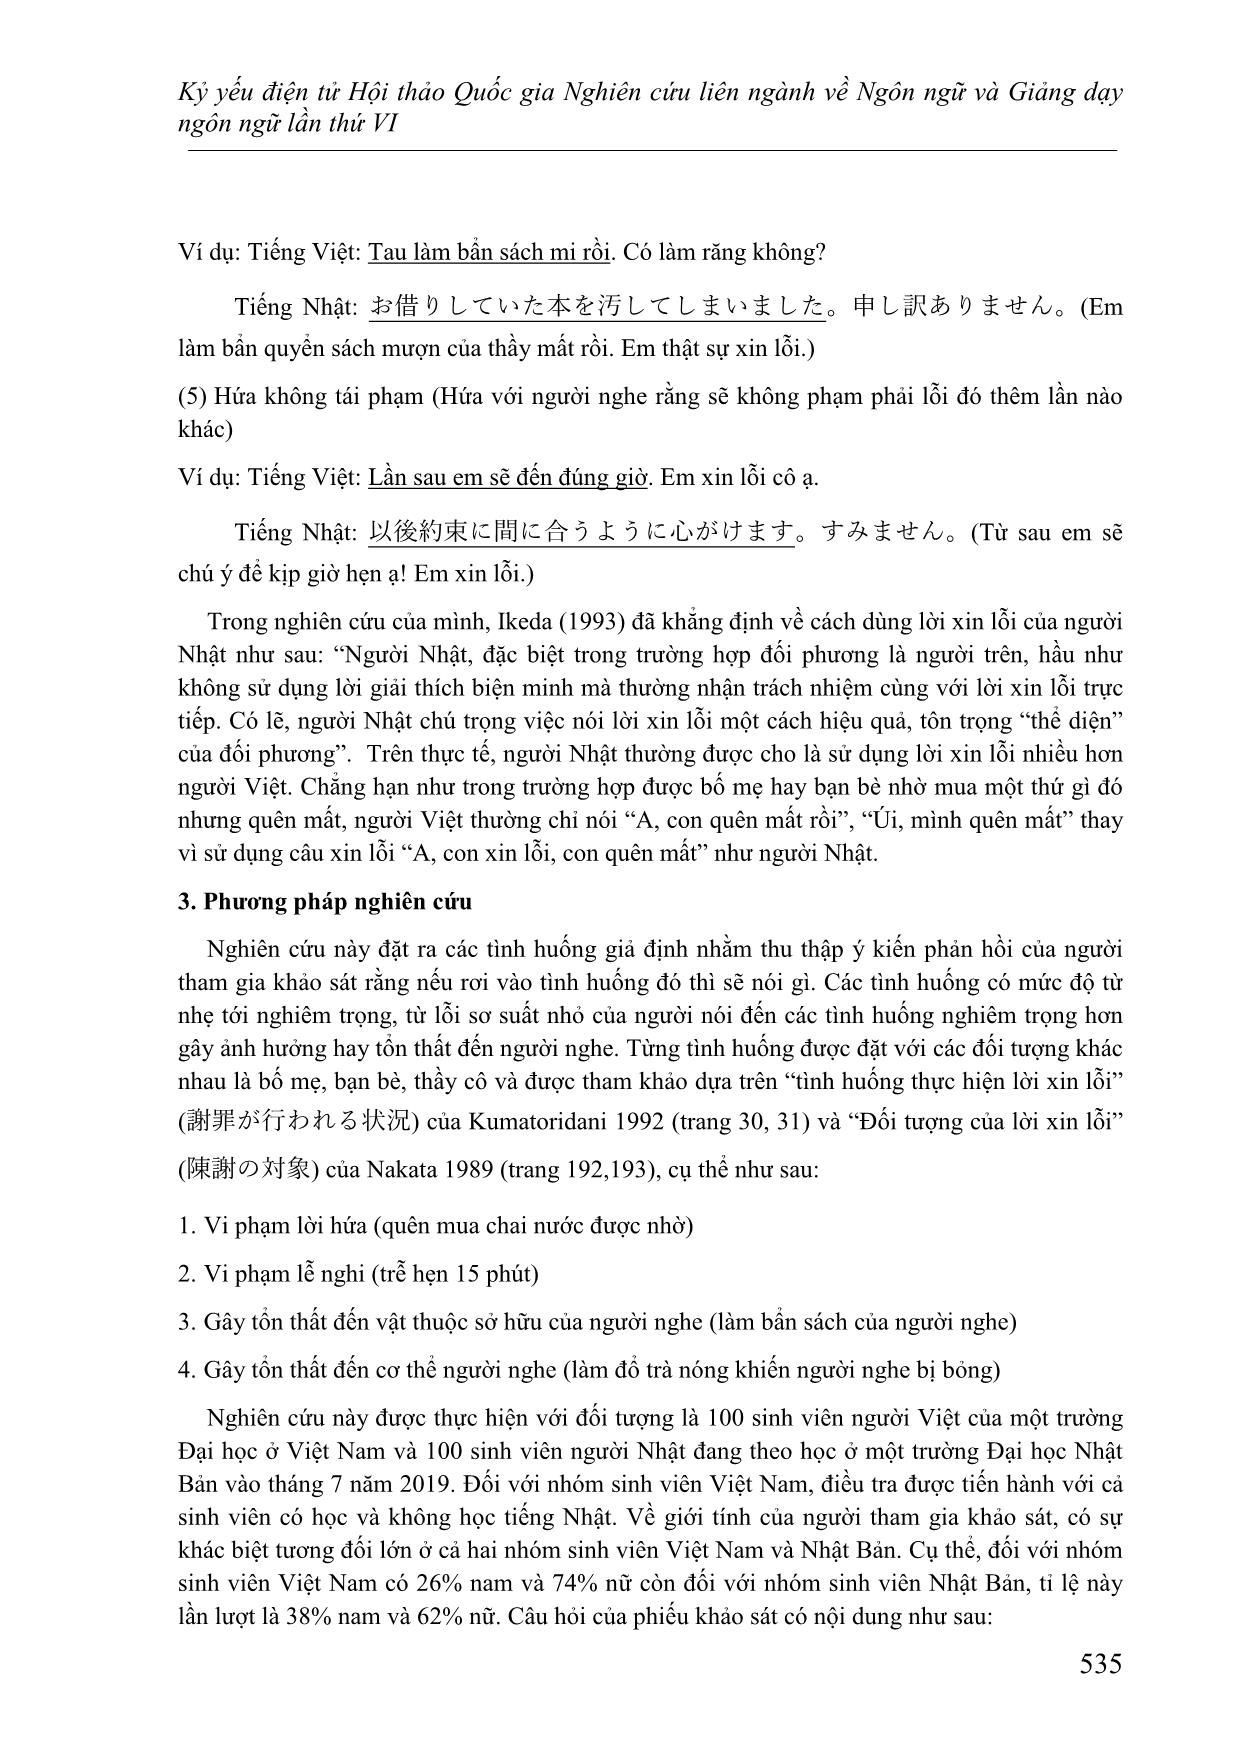 Các cách thức xin lỗi trong tiếng Việt và tiếng Nhật - Đối chiếu dựa trên lý thuyết lịch sự của Brown và Levinson trang 3